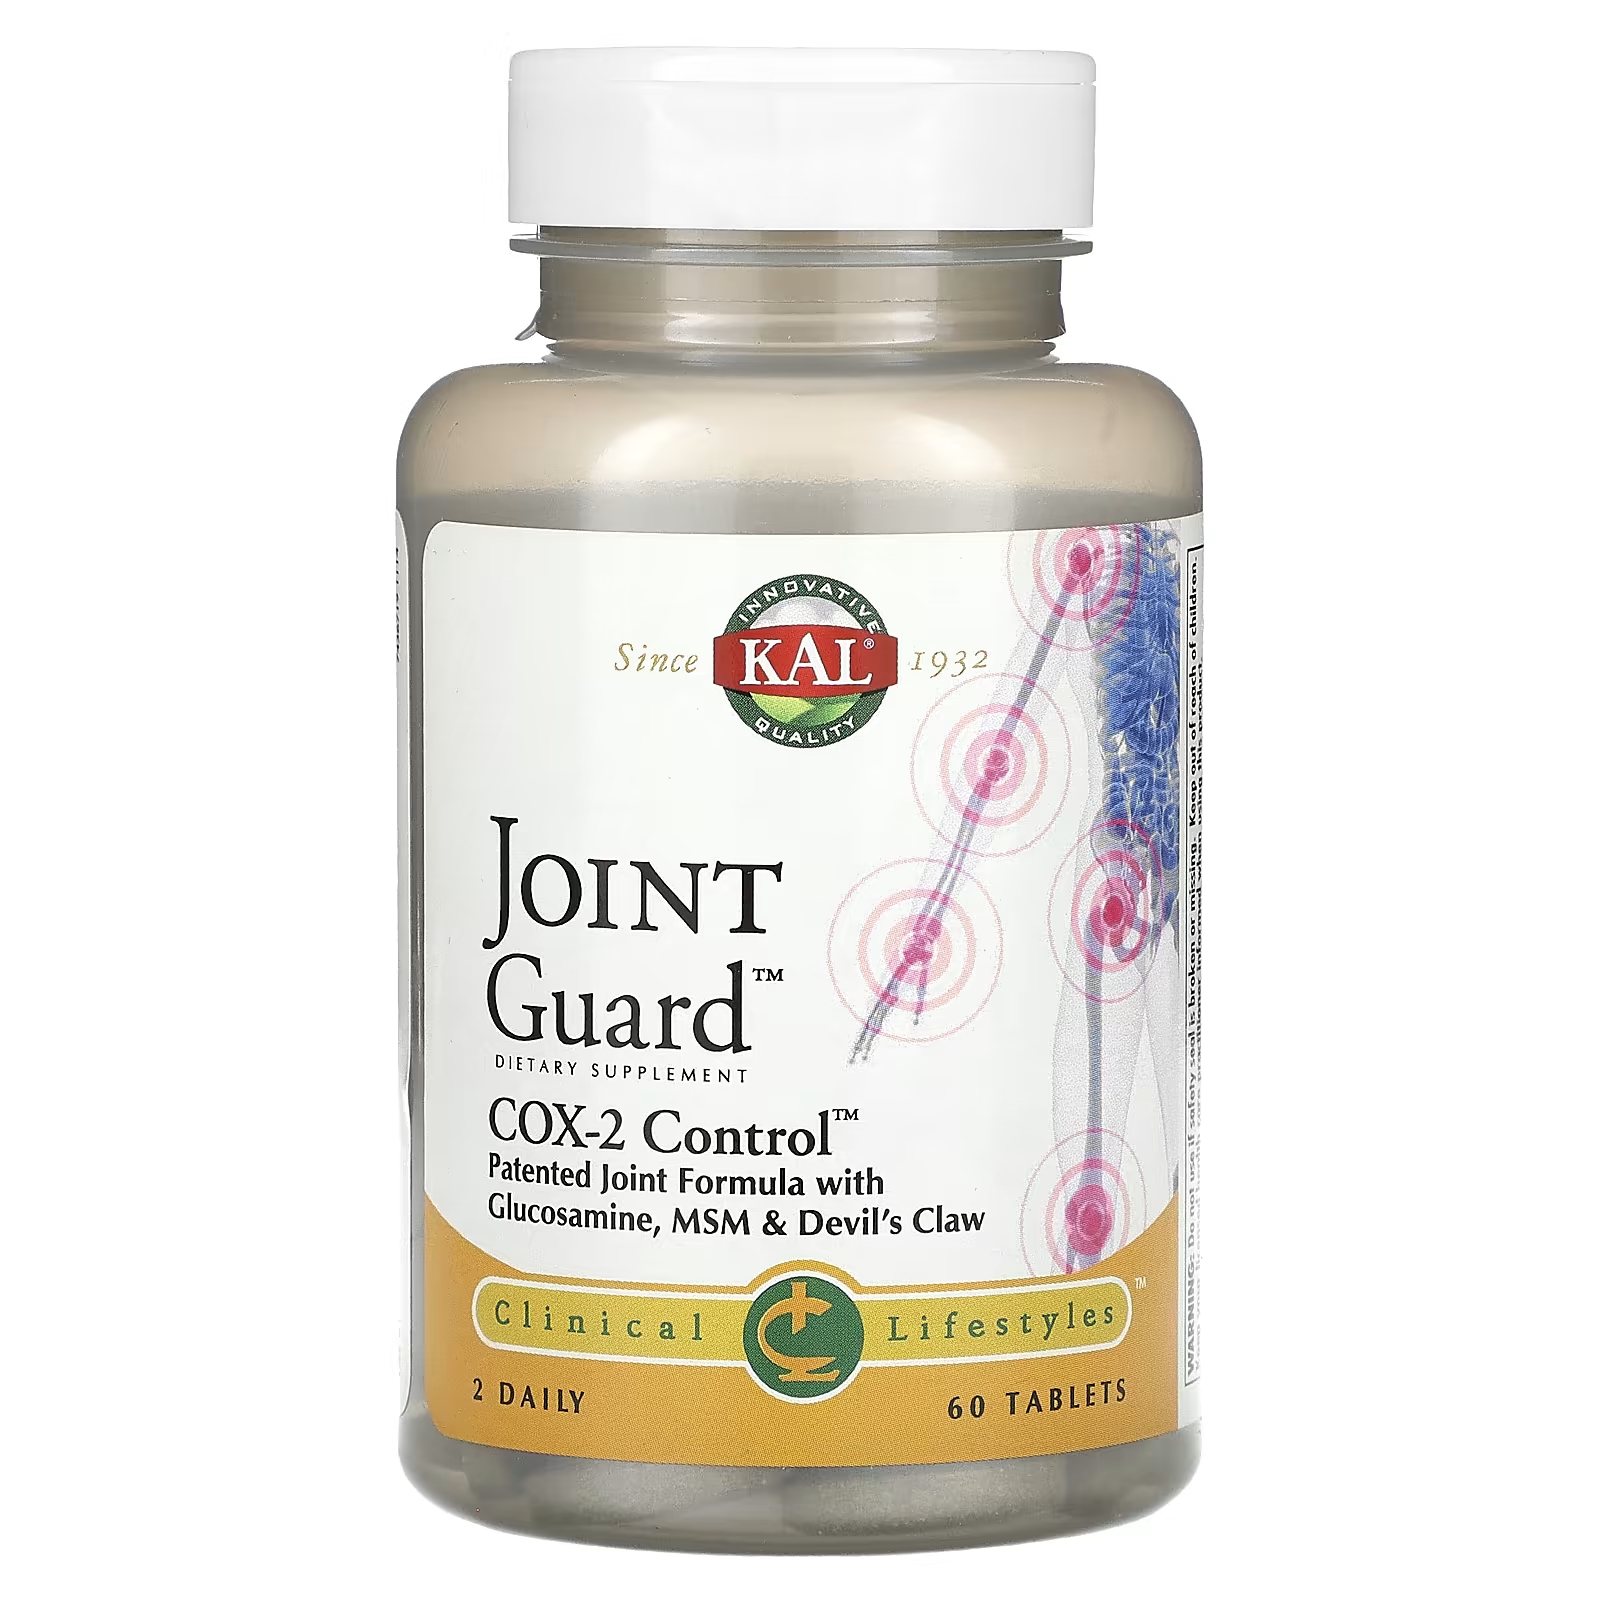 Пищевая добавка Kal Joint Guard COX-2 Control, 60 таблеток schiff move free advanced добавка для здоровья суставов с глюкозамином хондроитином и мсм 120 таблеток покрытых оболочкой